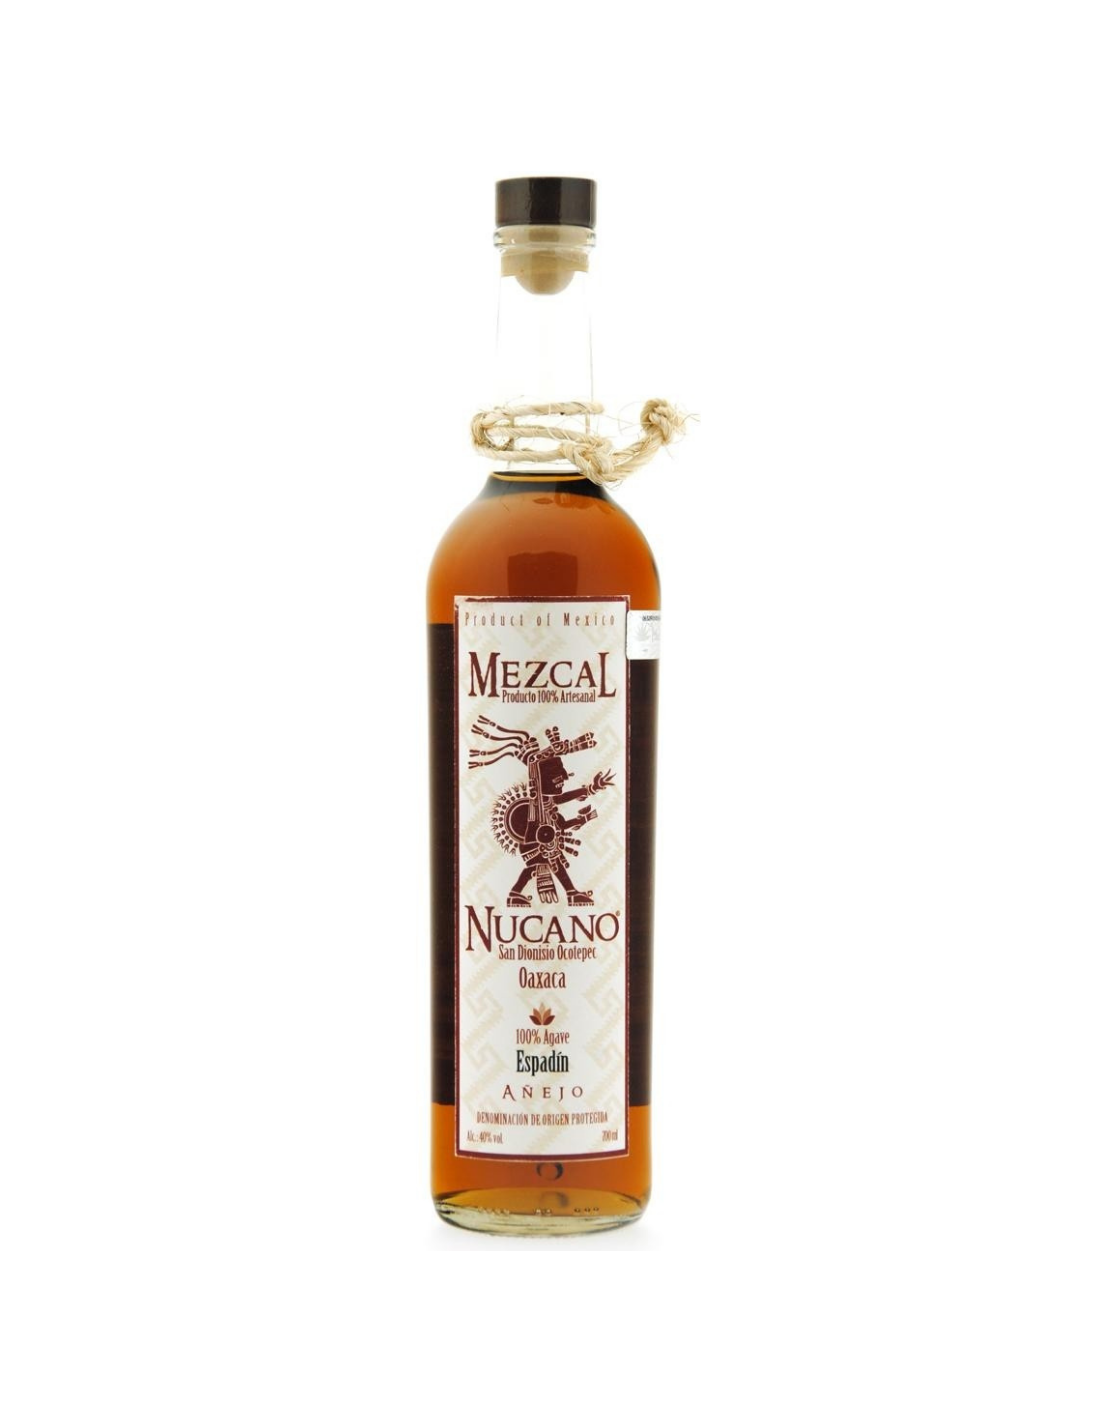 Tequila Mezcal Nucano Espadin Anejo, 0.7L, 40% alc., Mexic alcooldiscount.ro